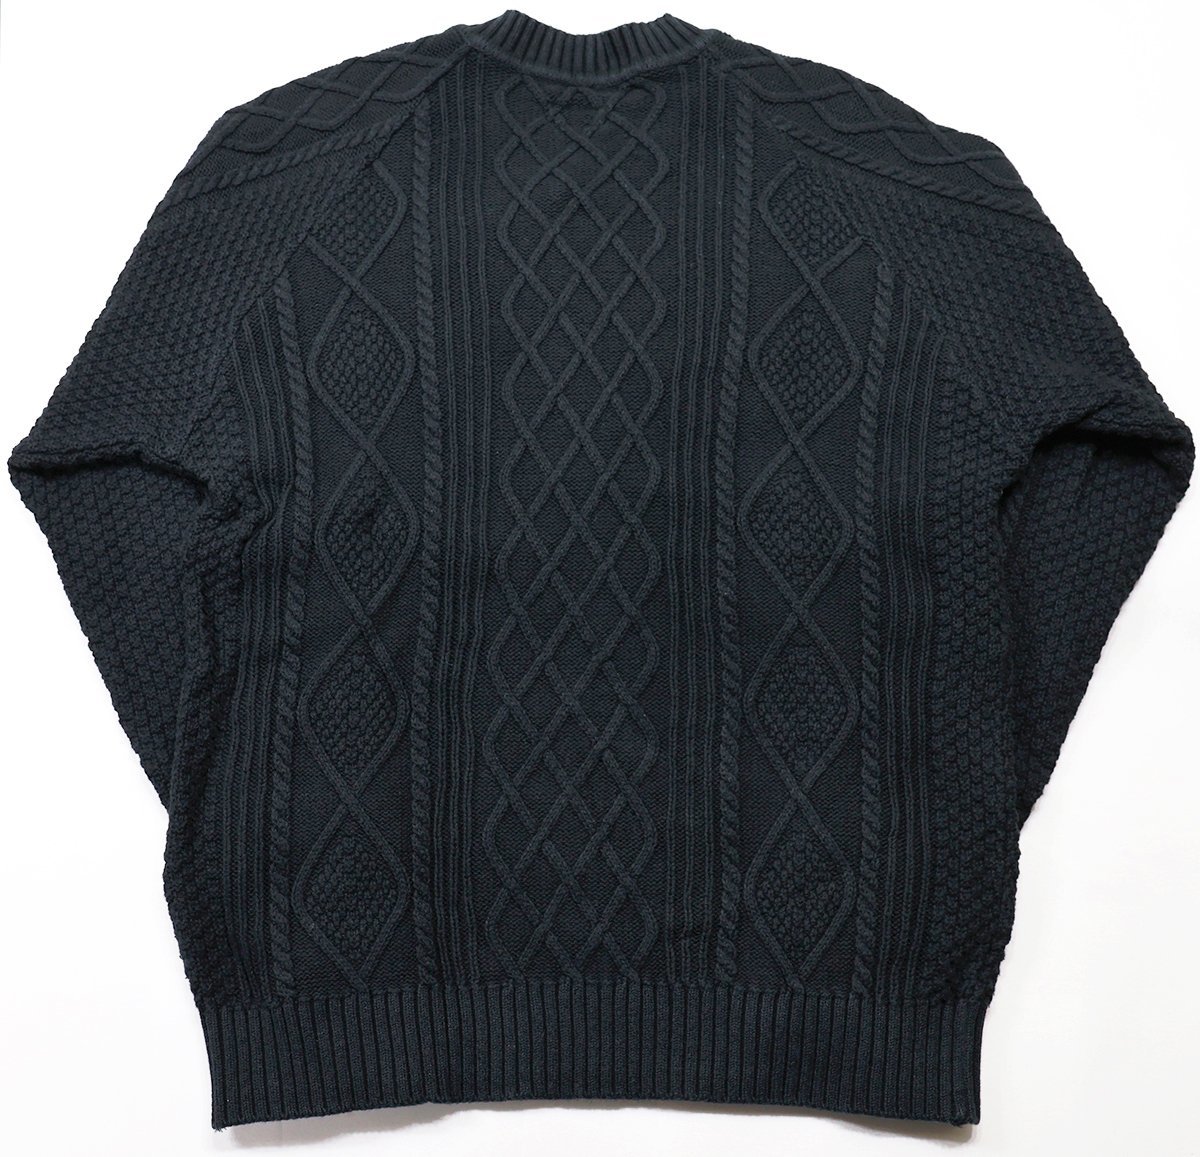 THE FLATHEAD (フラットヘッド) Cotton Knit V-Neck Sweater / ケーブル編み コットンニット Vネックセーター CL-KT002 ブラック size S_画像2